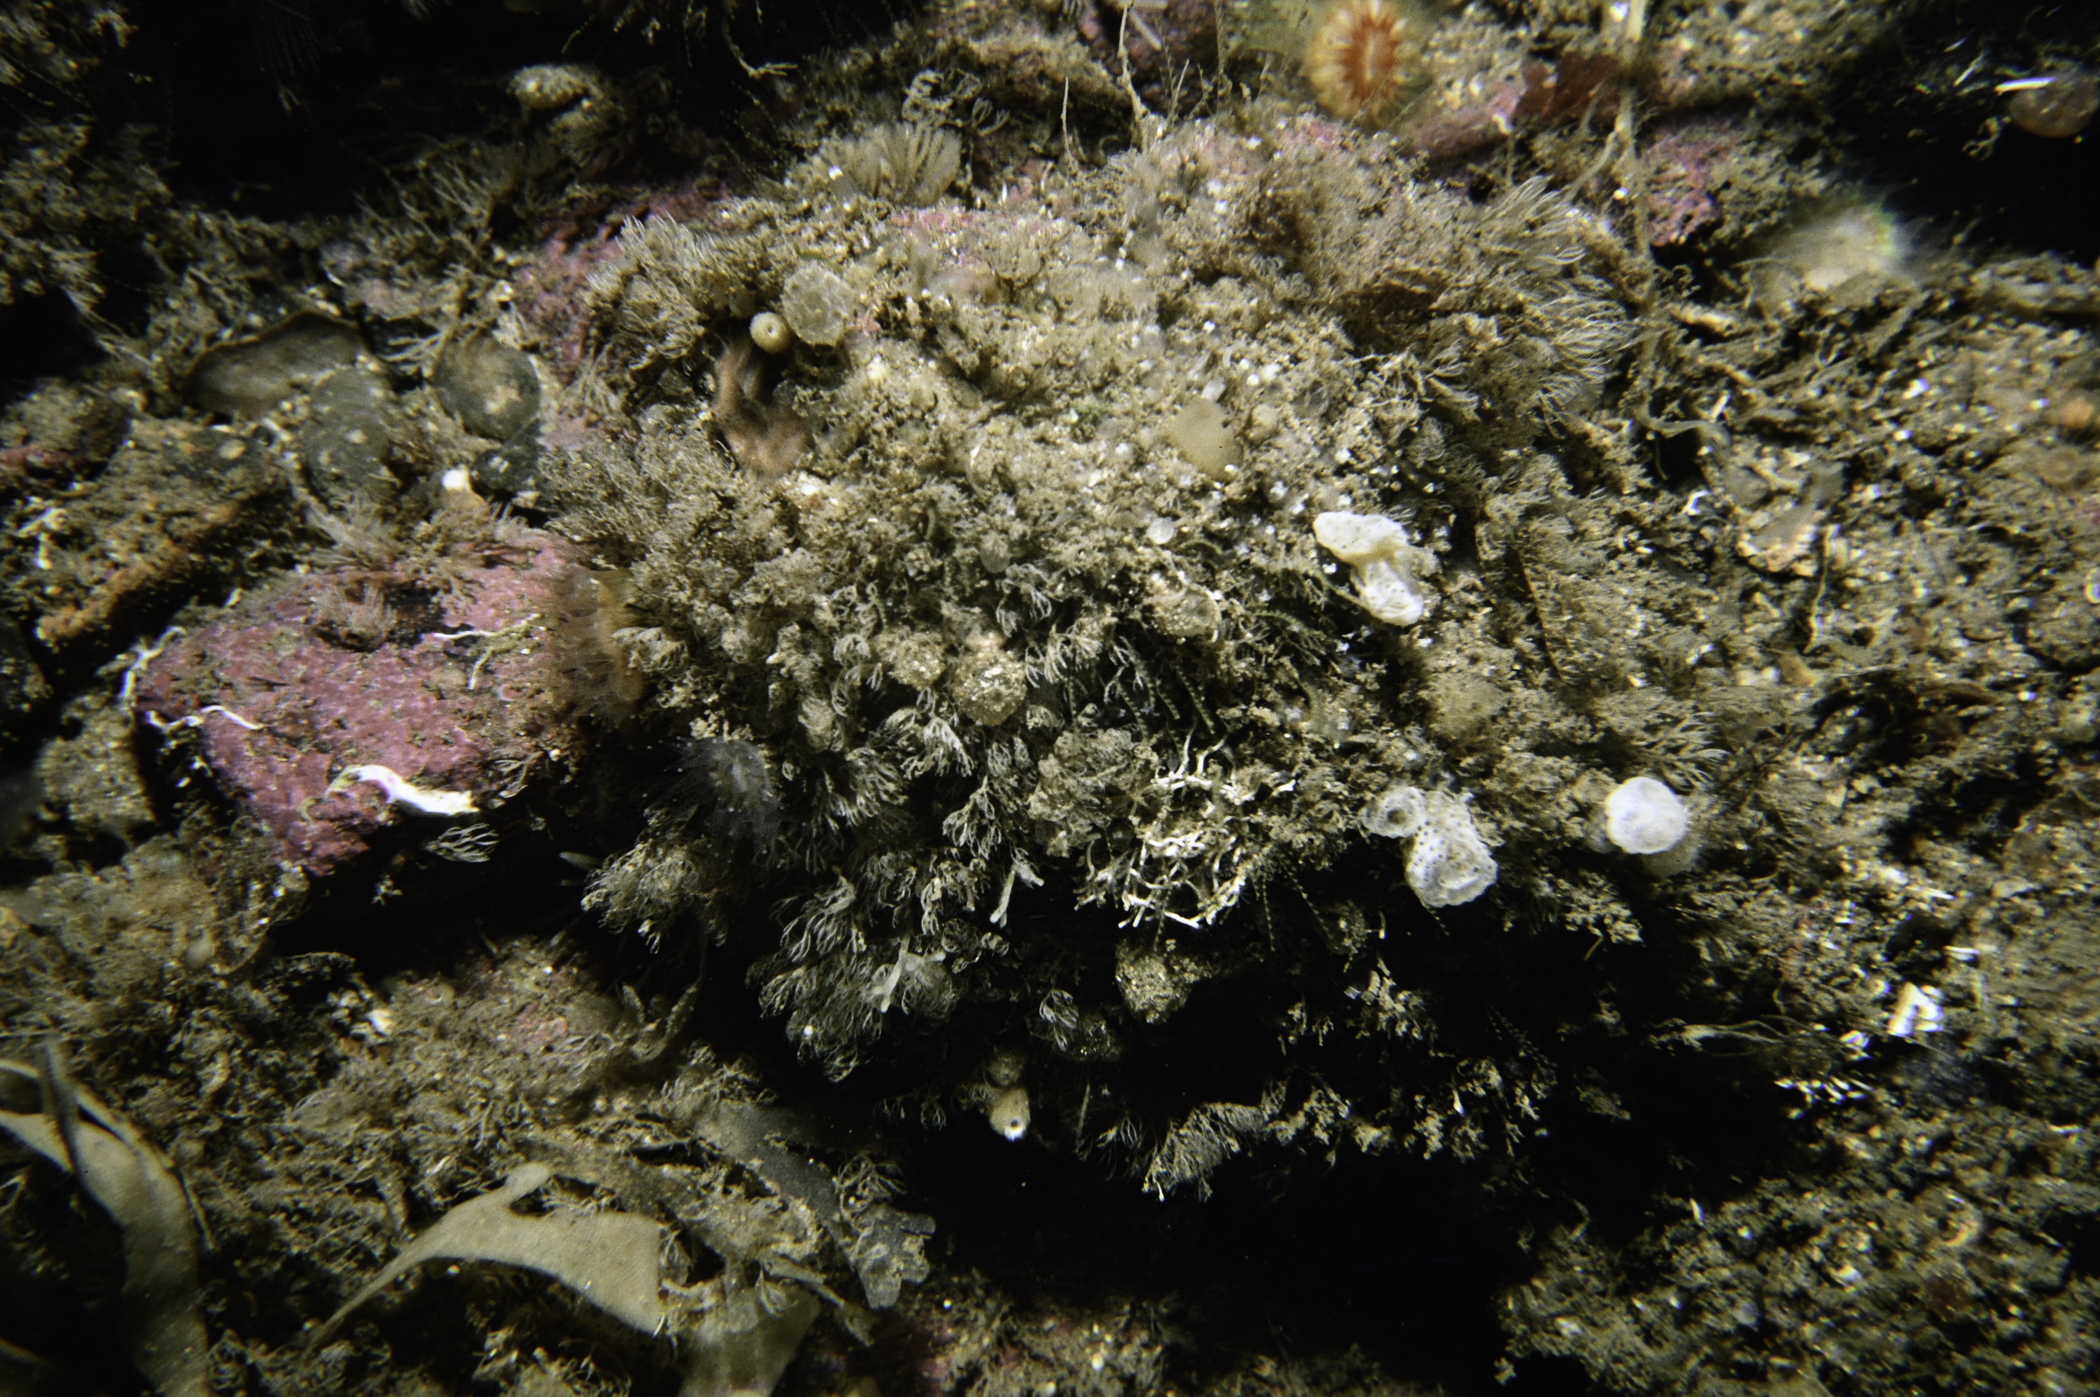 Epizoanthus couchii, Antennella secundaria, Crisia eburnea, Pycnoclavella stolonialis. Site: Drumnakill Point, Murlough Bay. 